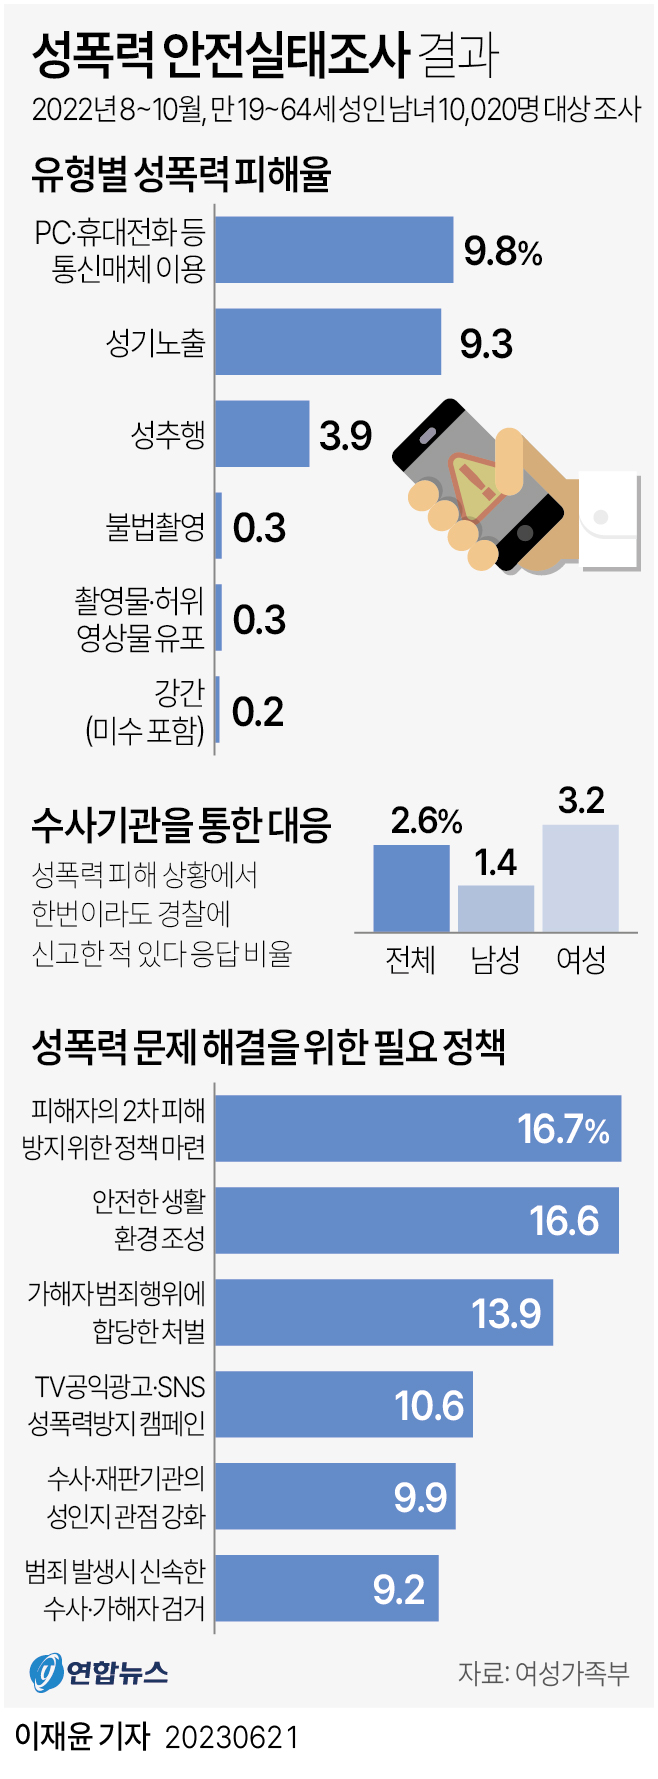 [그래픽] 성폭력 안전실태조사 결과 | 연합뉴스